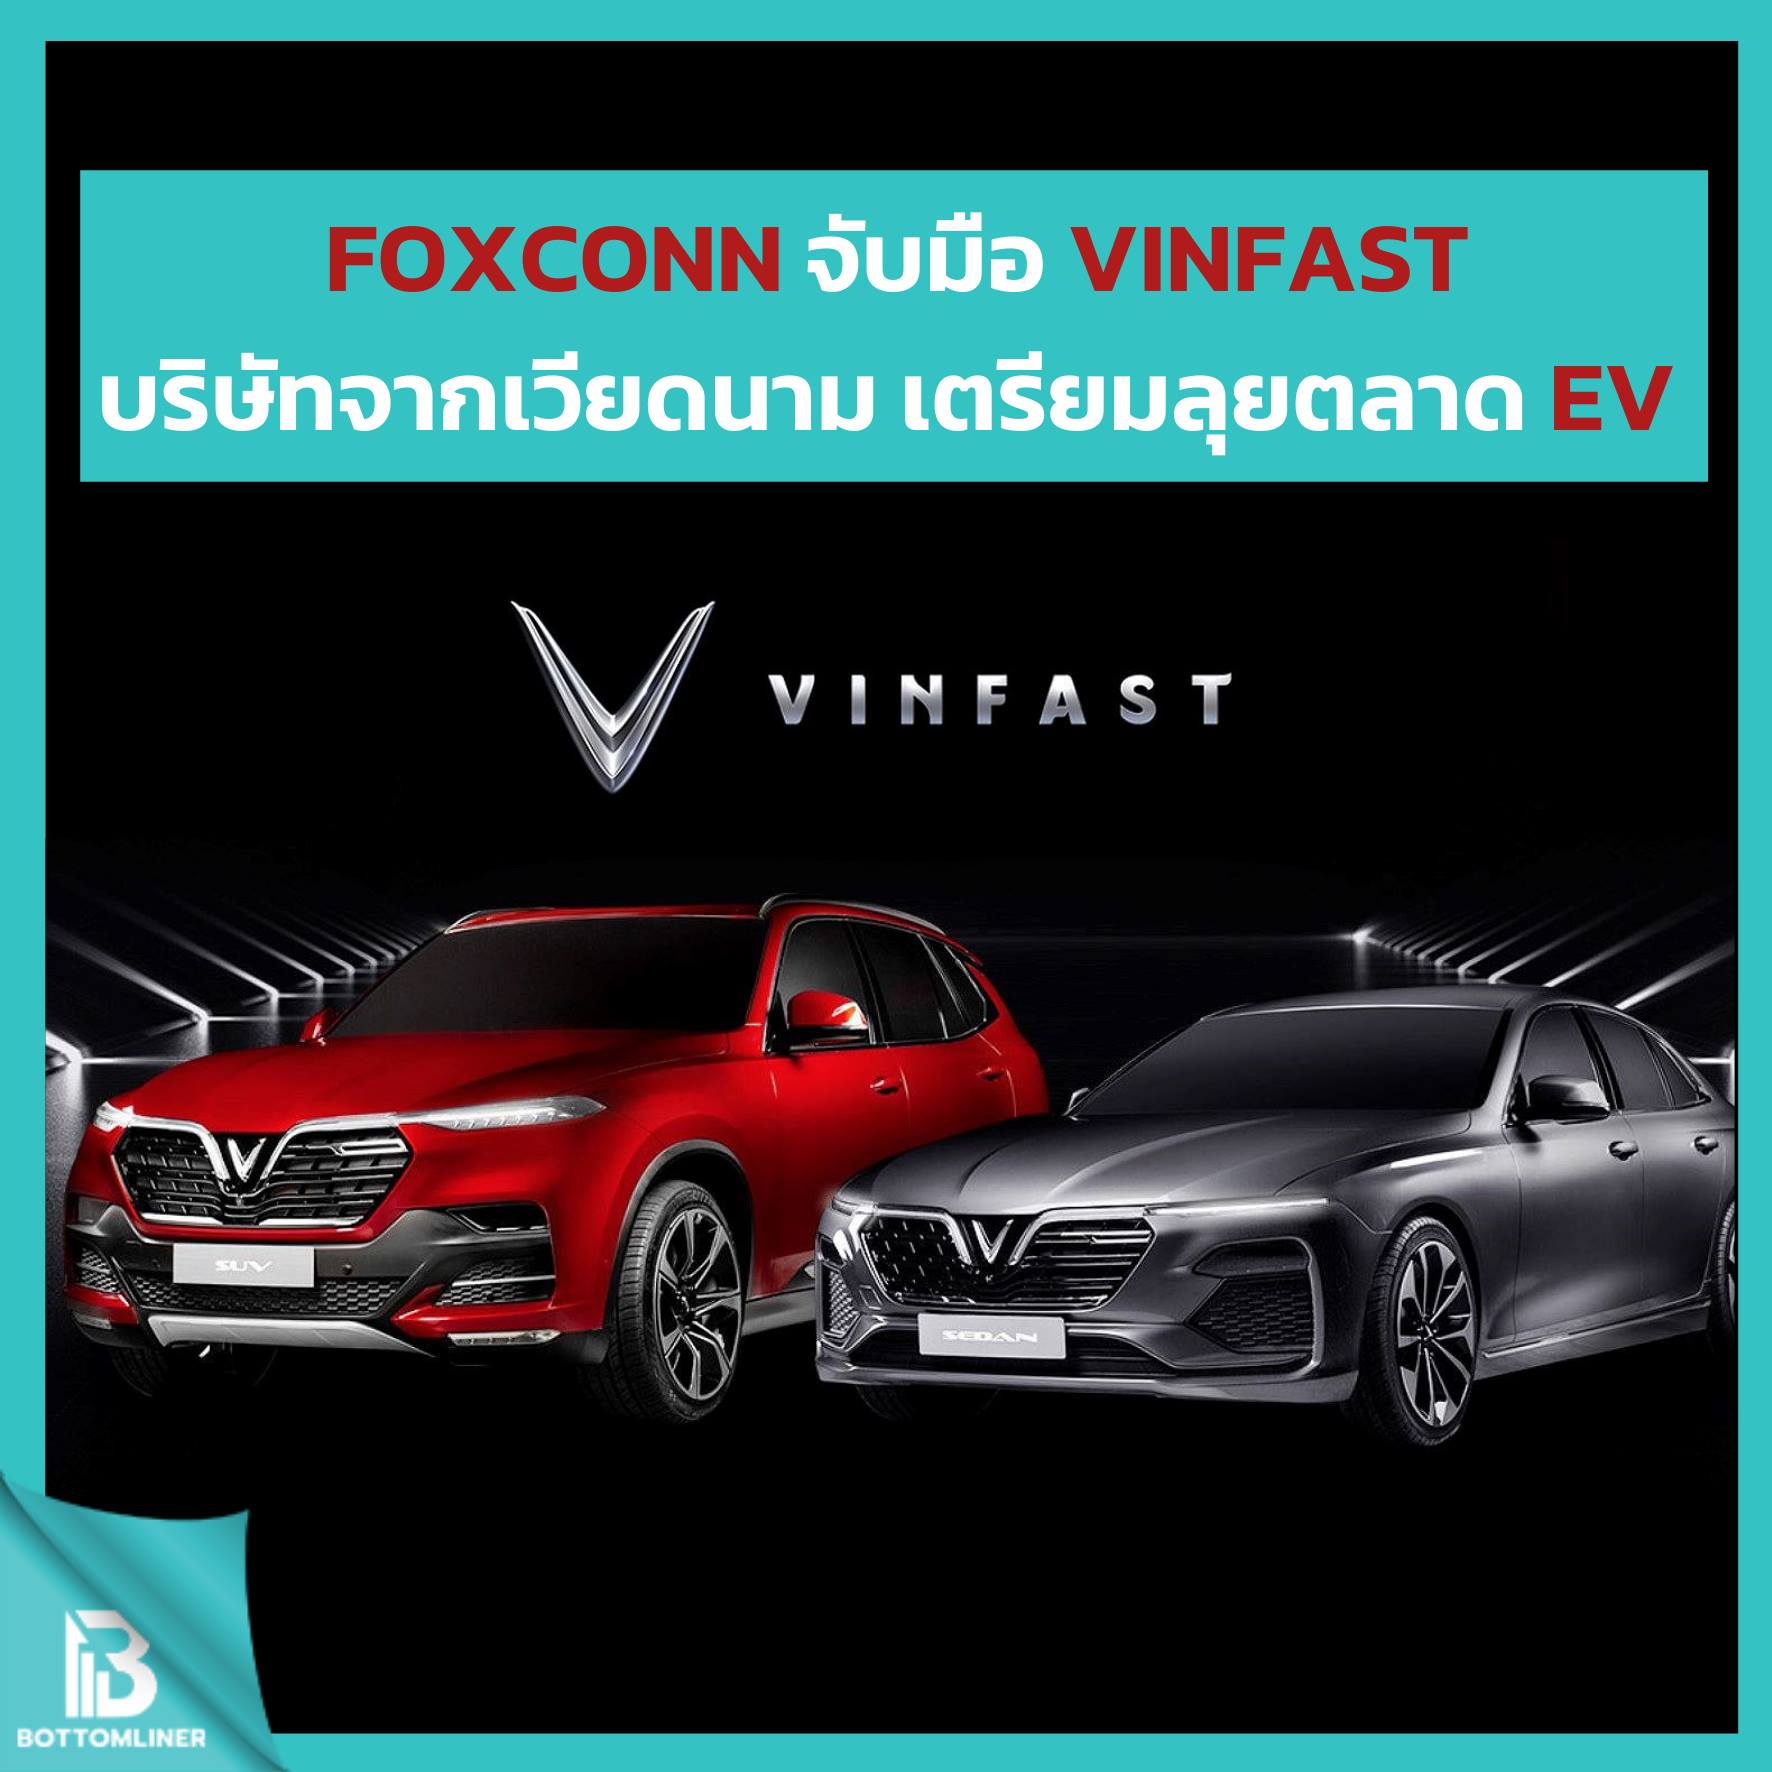 Foxconn จับมือ VinFast บริษัทจากเวียดนาม เตรียมลุยตลาด EV